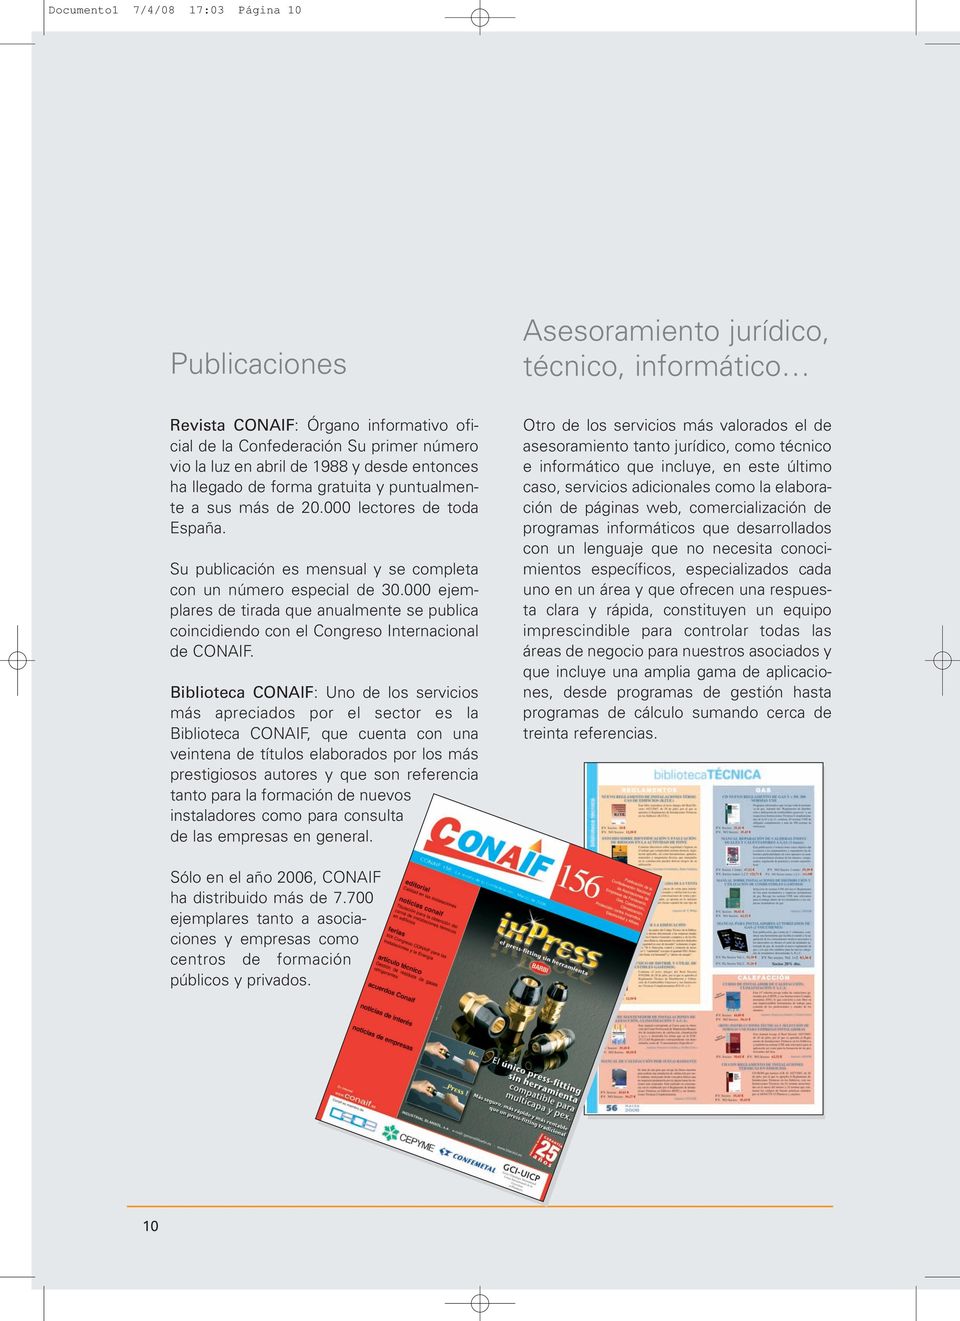 000 ejemplares de tirada que anualmente se publica coincidiendo con el Congreso Internacional de CONAIF.